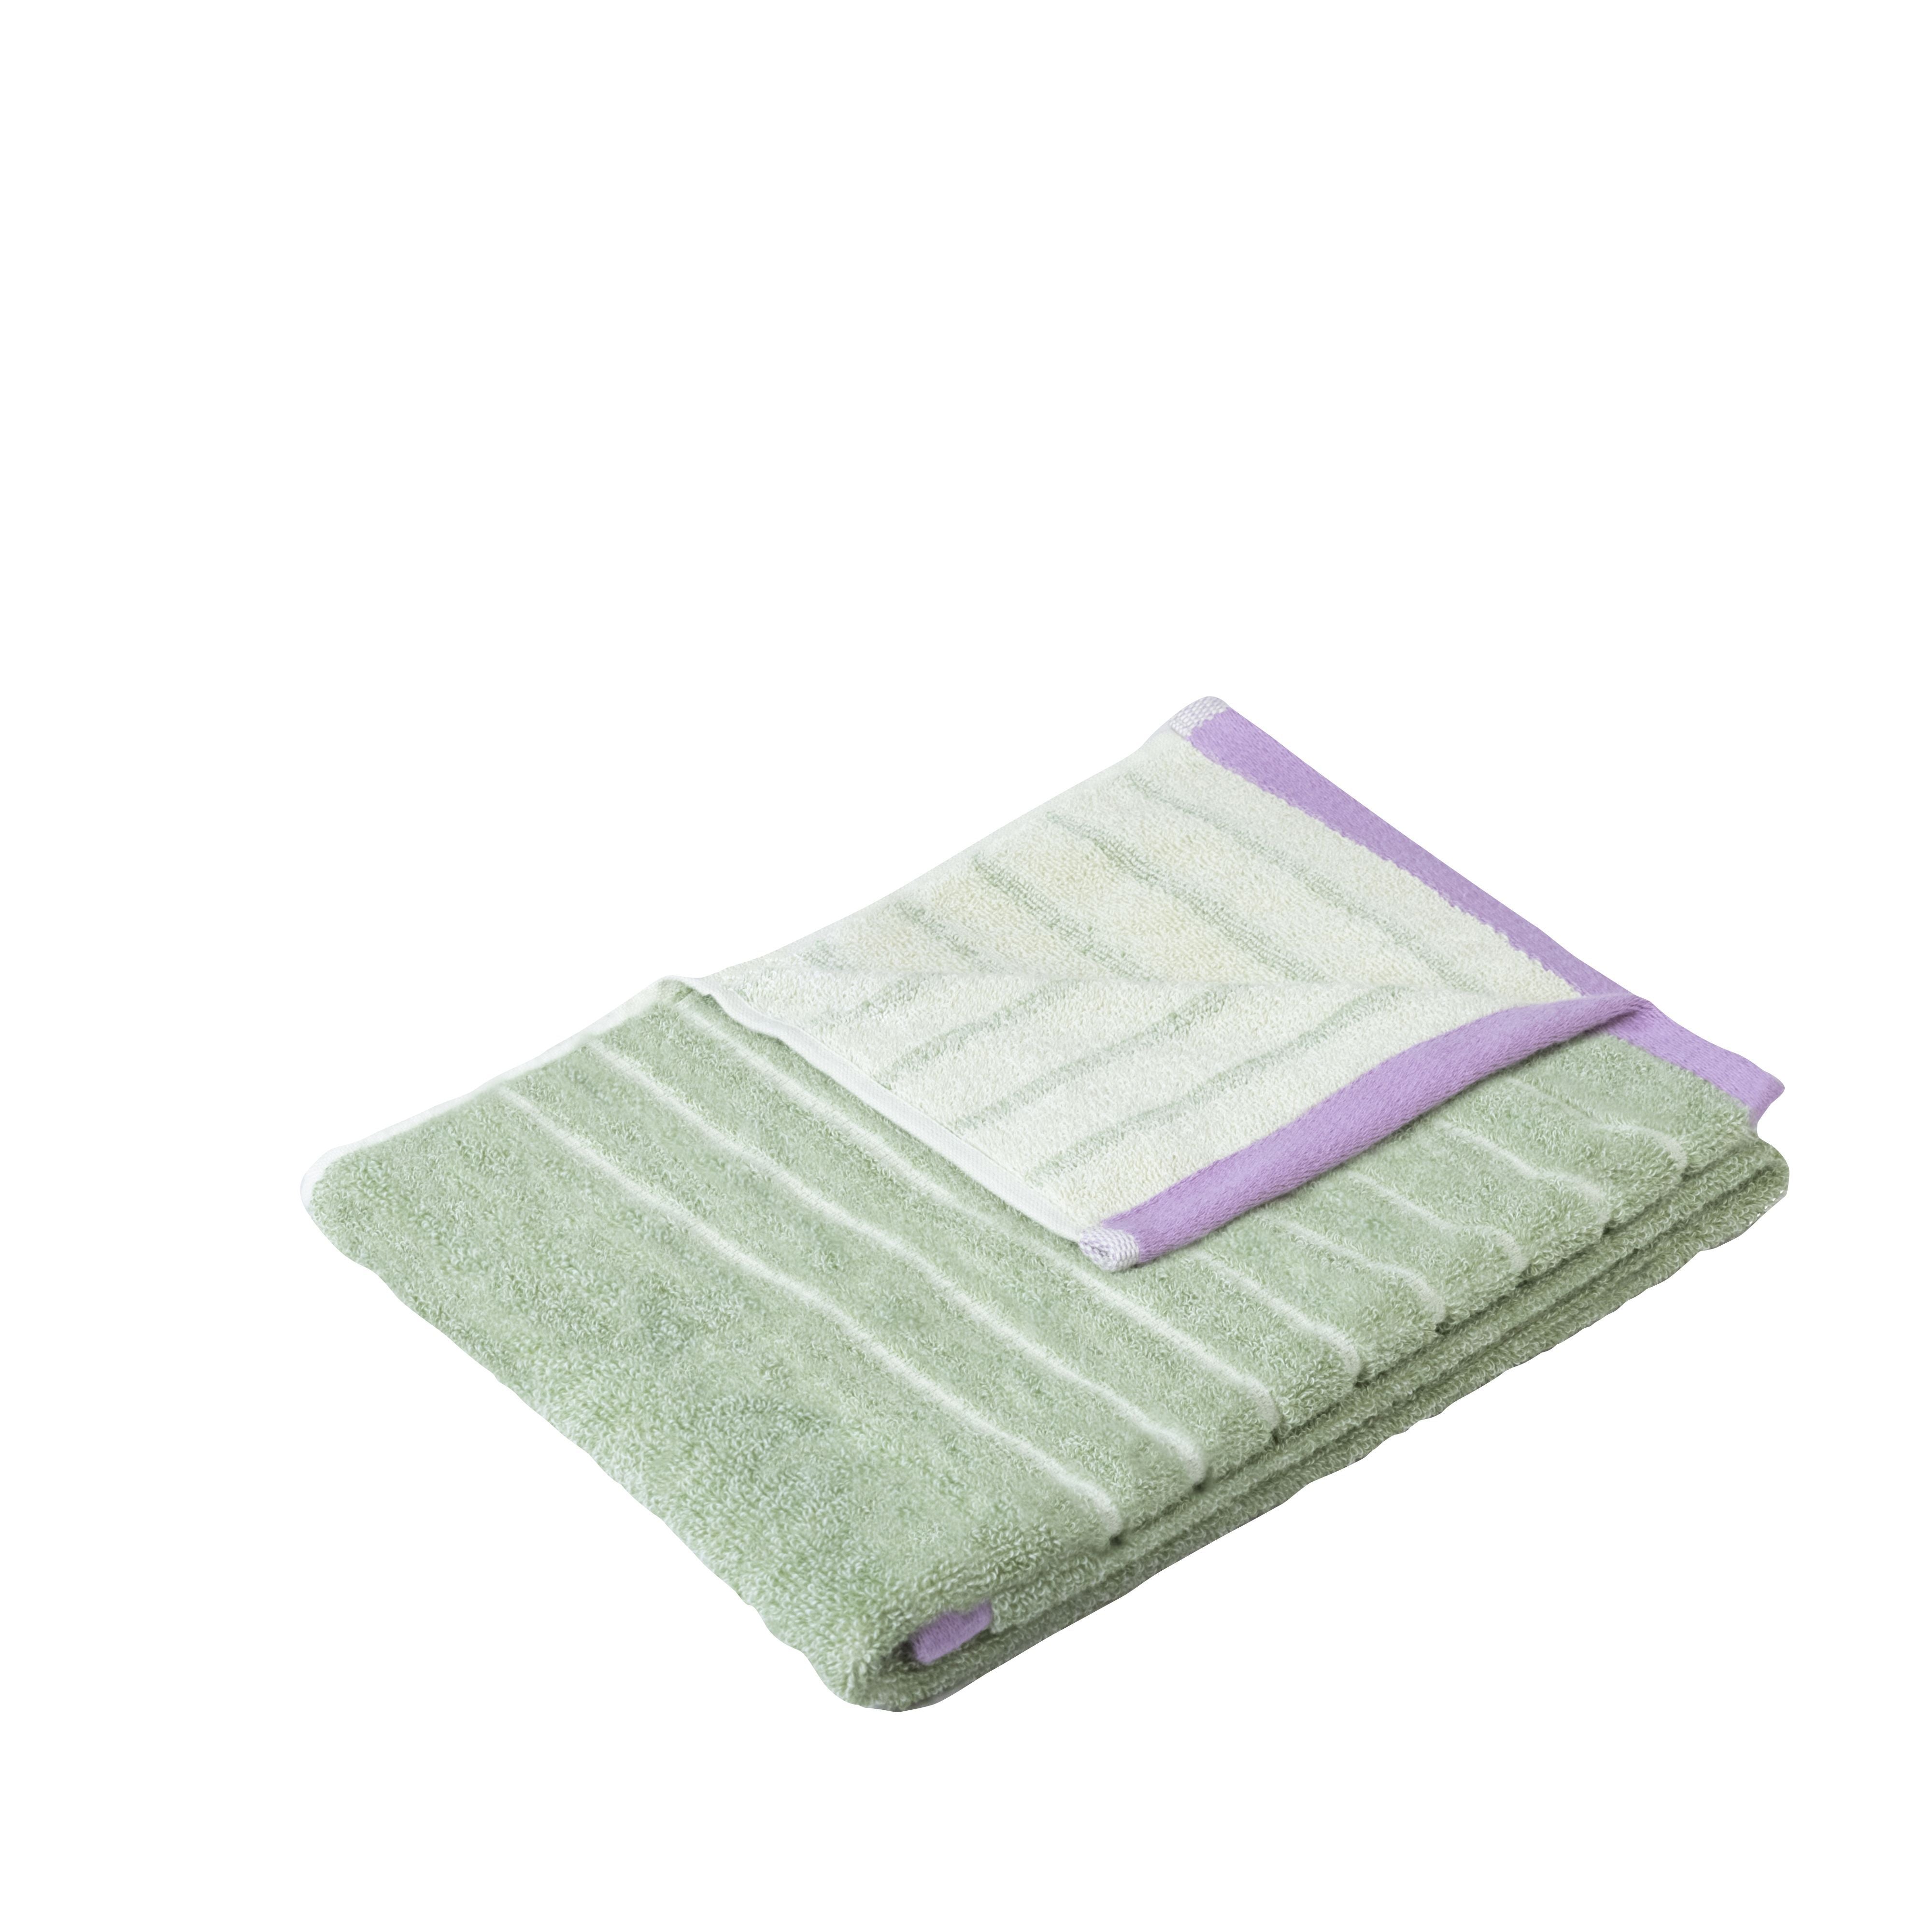 Hübsch Promenade Towel Large, Green/Pink